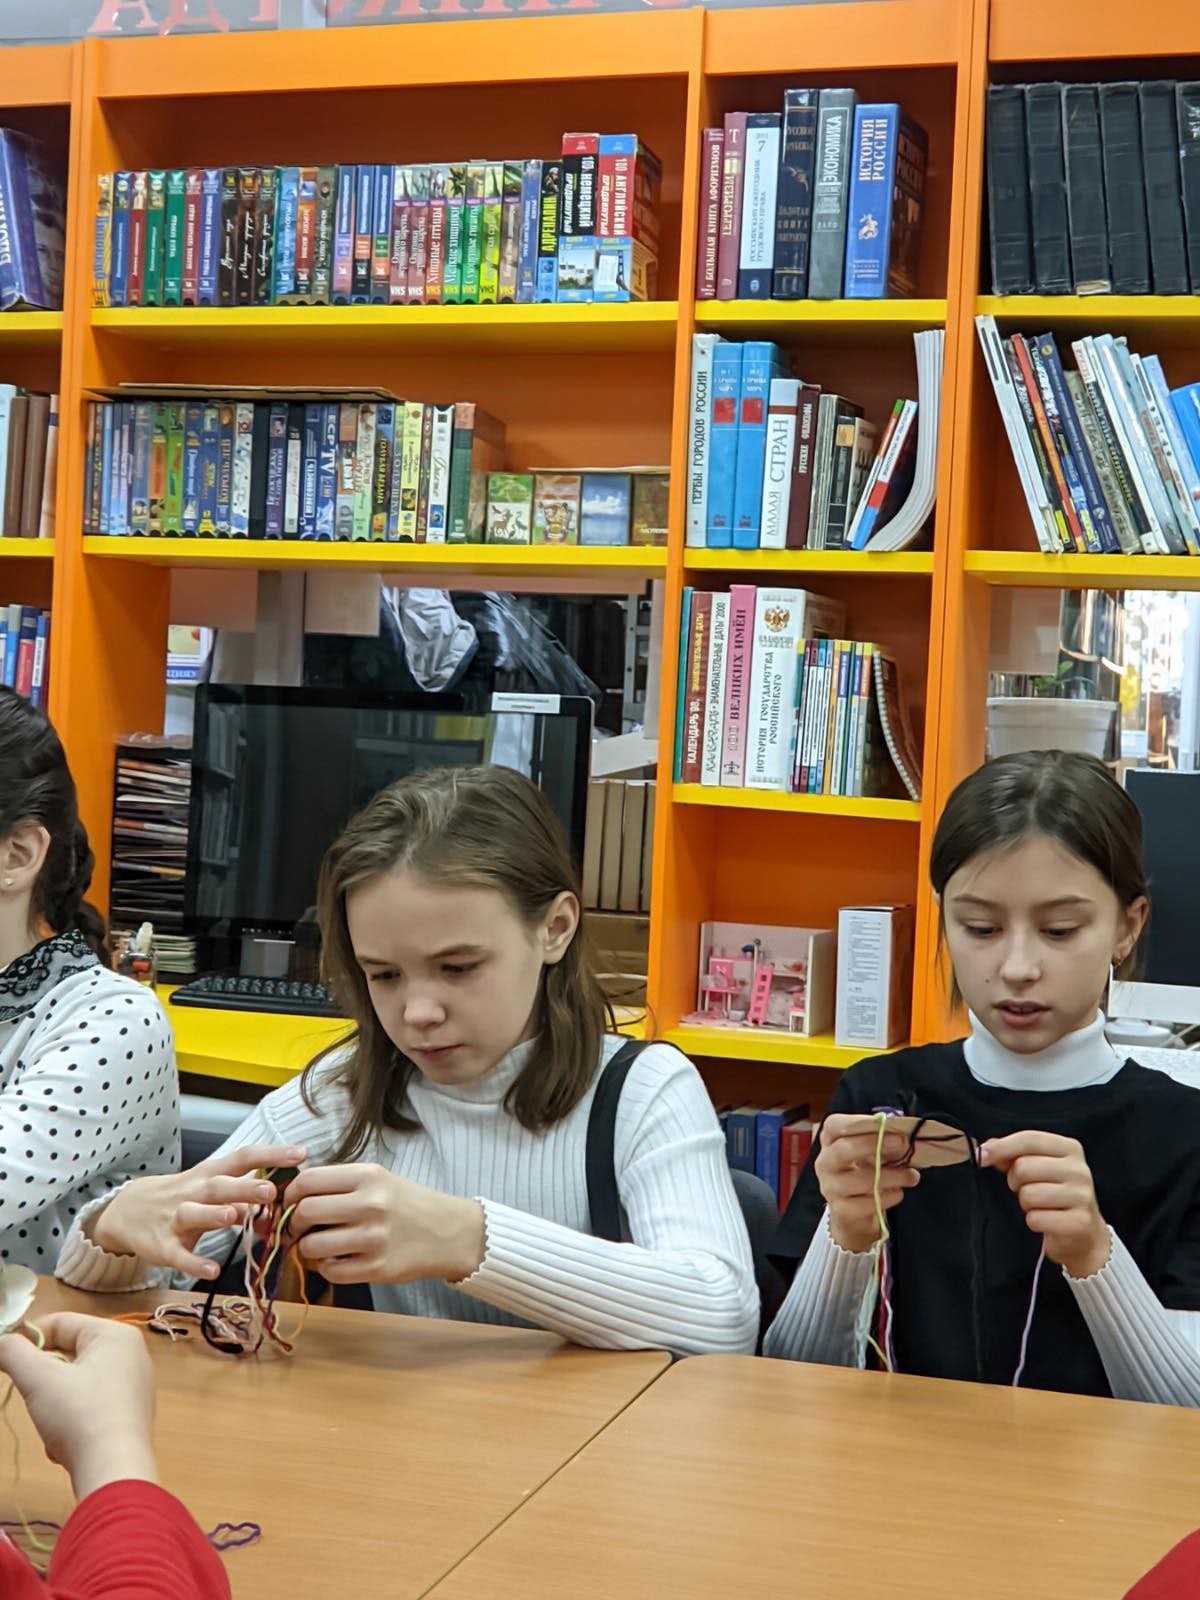 26 ноября учащиеся нашей школы посетили Унъюганскую модельную библиотеку семейного чтения имени Е.Д. Айпина, где был представлен передвижной выставочный проект этнографического музея «Торум Маа»..